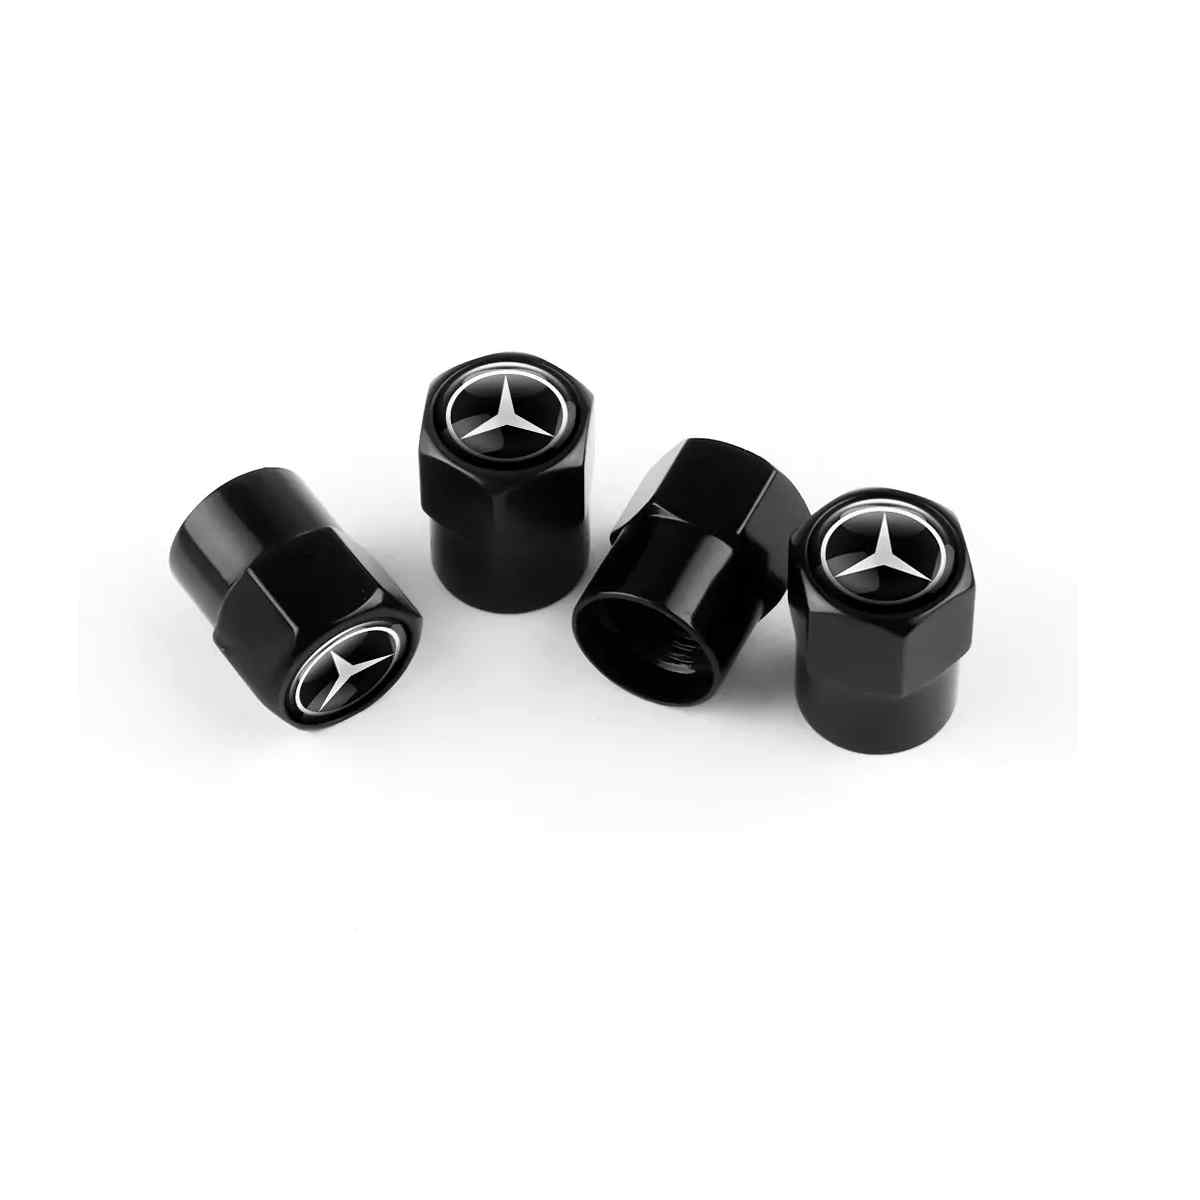 Tapones de Aluminio para Válvula de Neumático de Coche Mercedes - 4  Unidades Negras